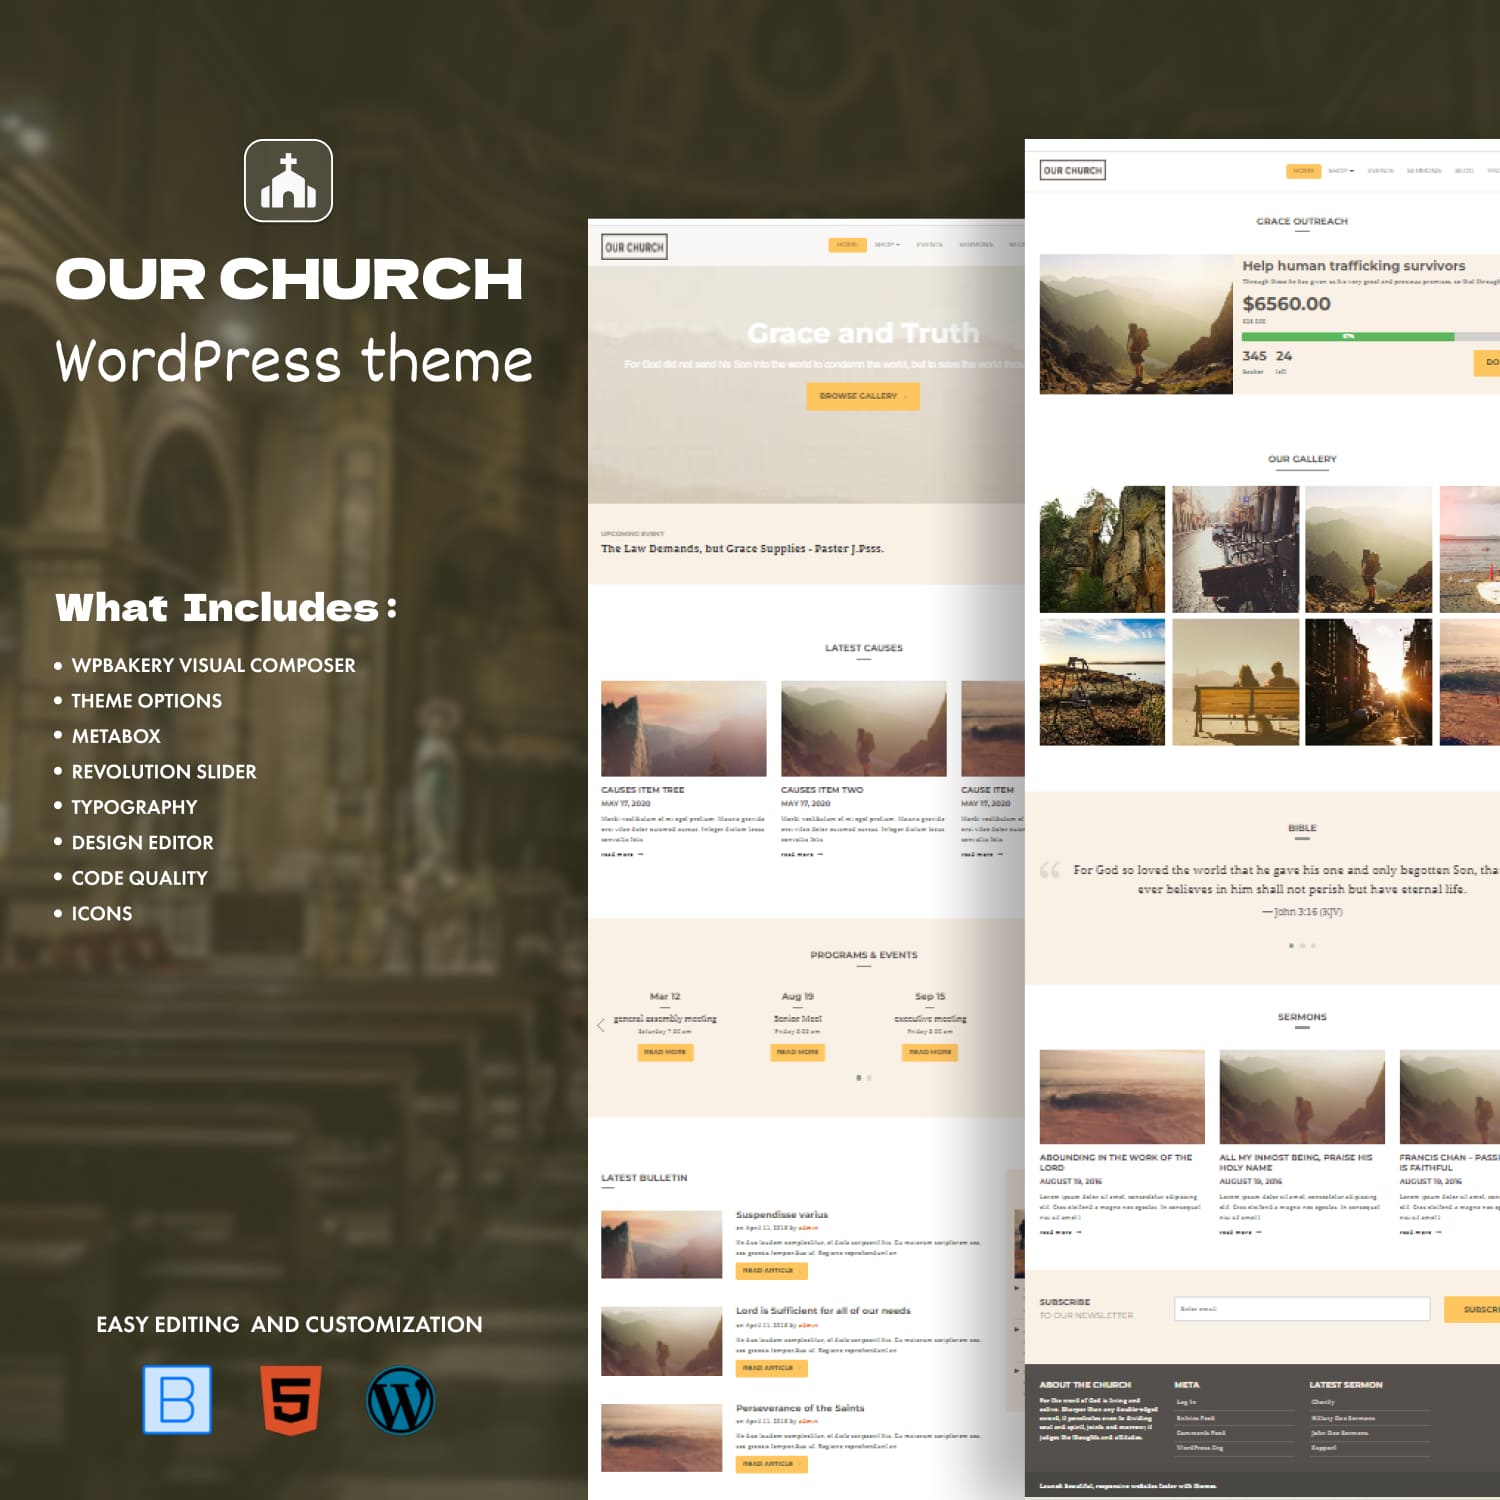 Our Church - Church WordPress Theme.